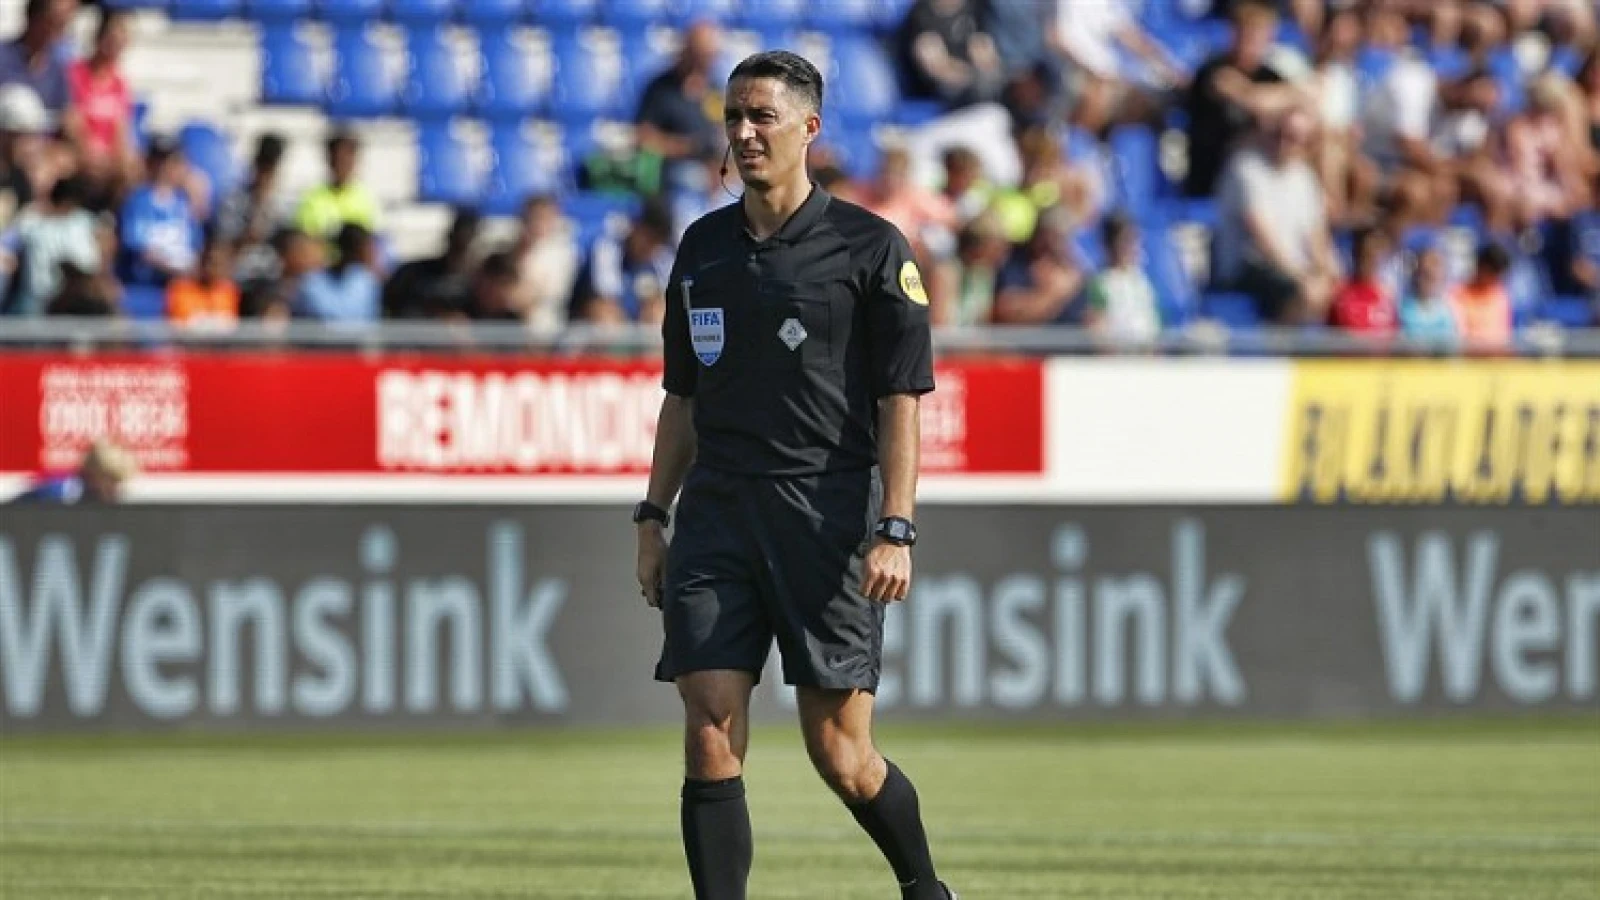 Serdar Gözübüyük scheidsrechter tijdens wedstrijd tussen Feyenoord en ADO Den Haag